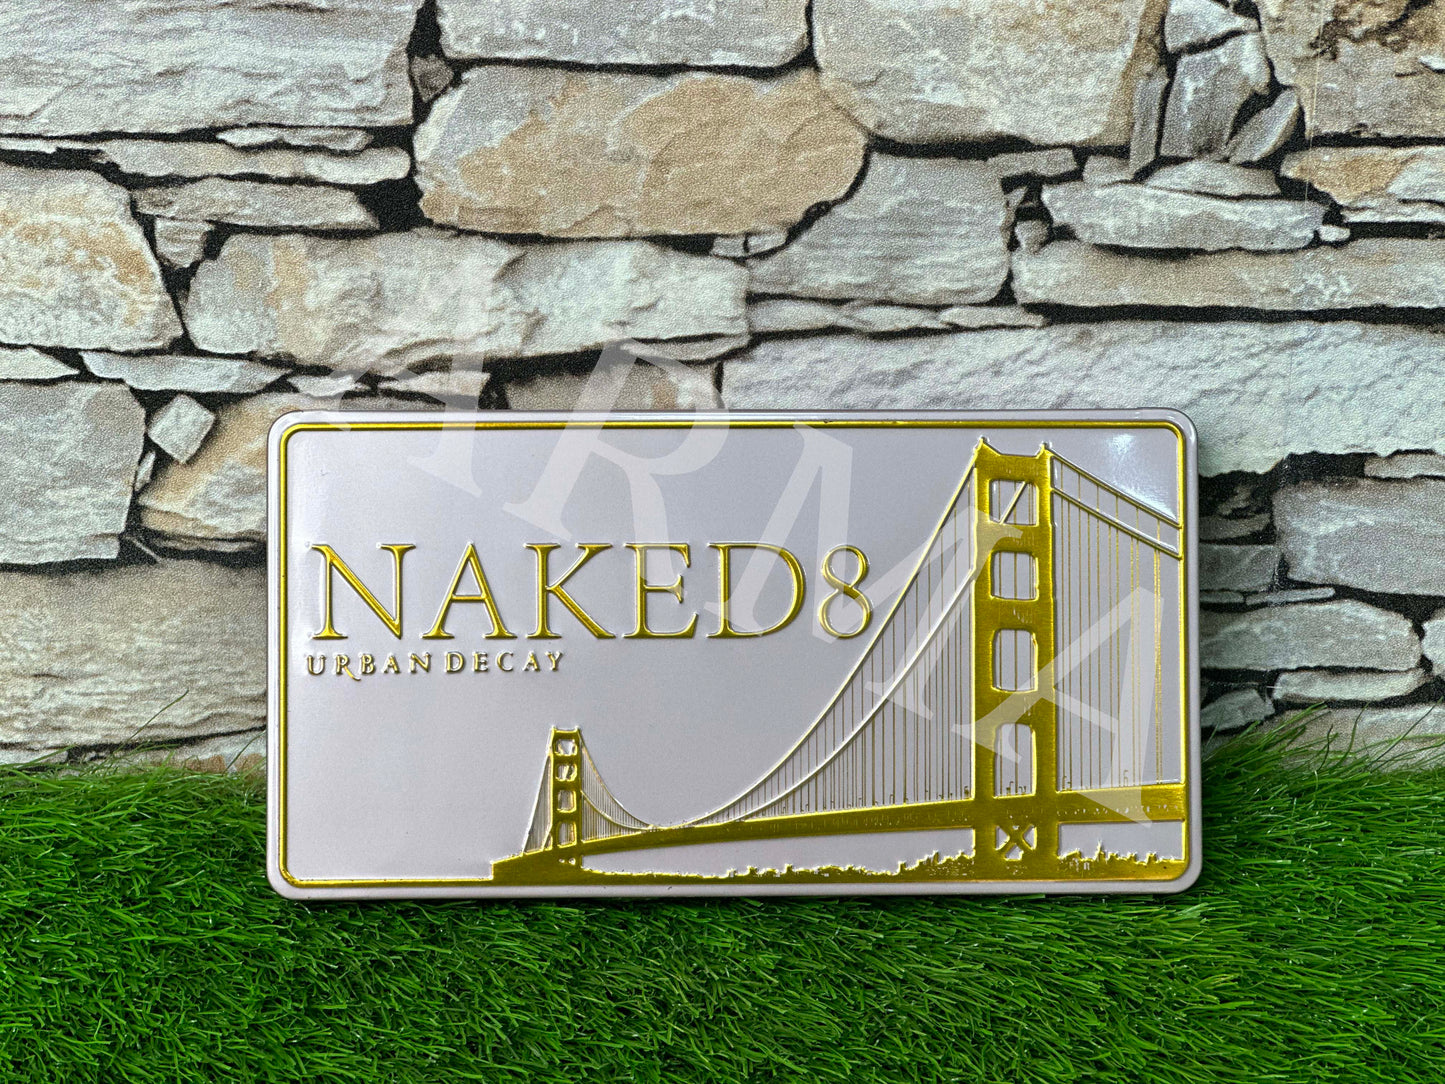 Naked 8 Urban Decay 24 Eye Shades | Makeup Kit